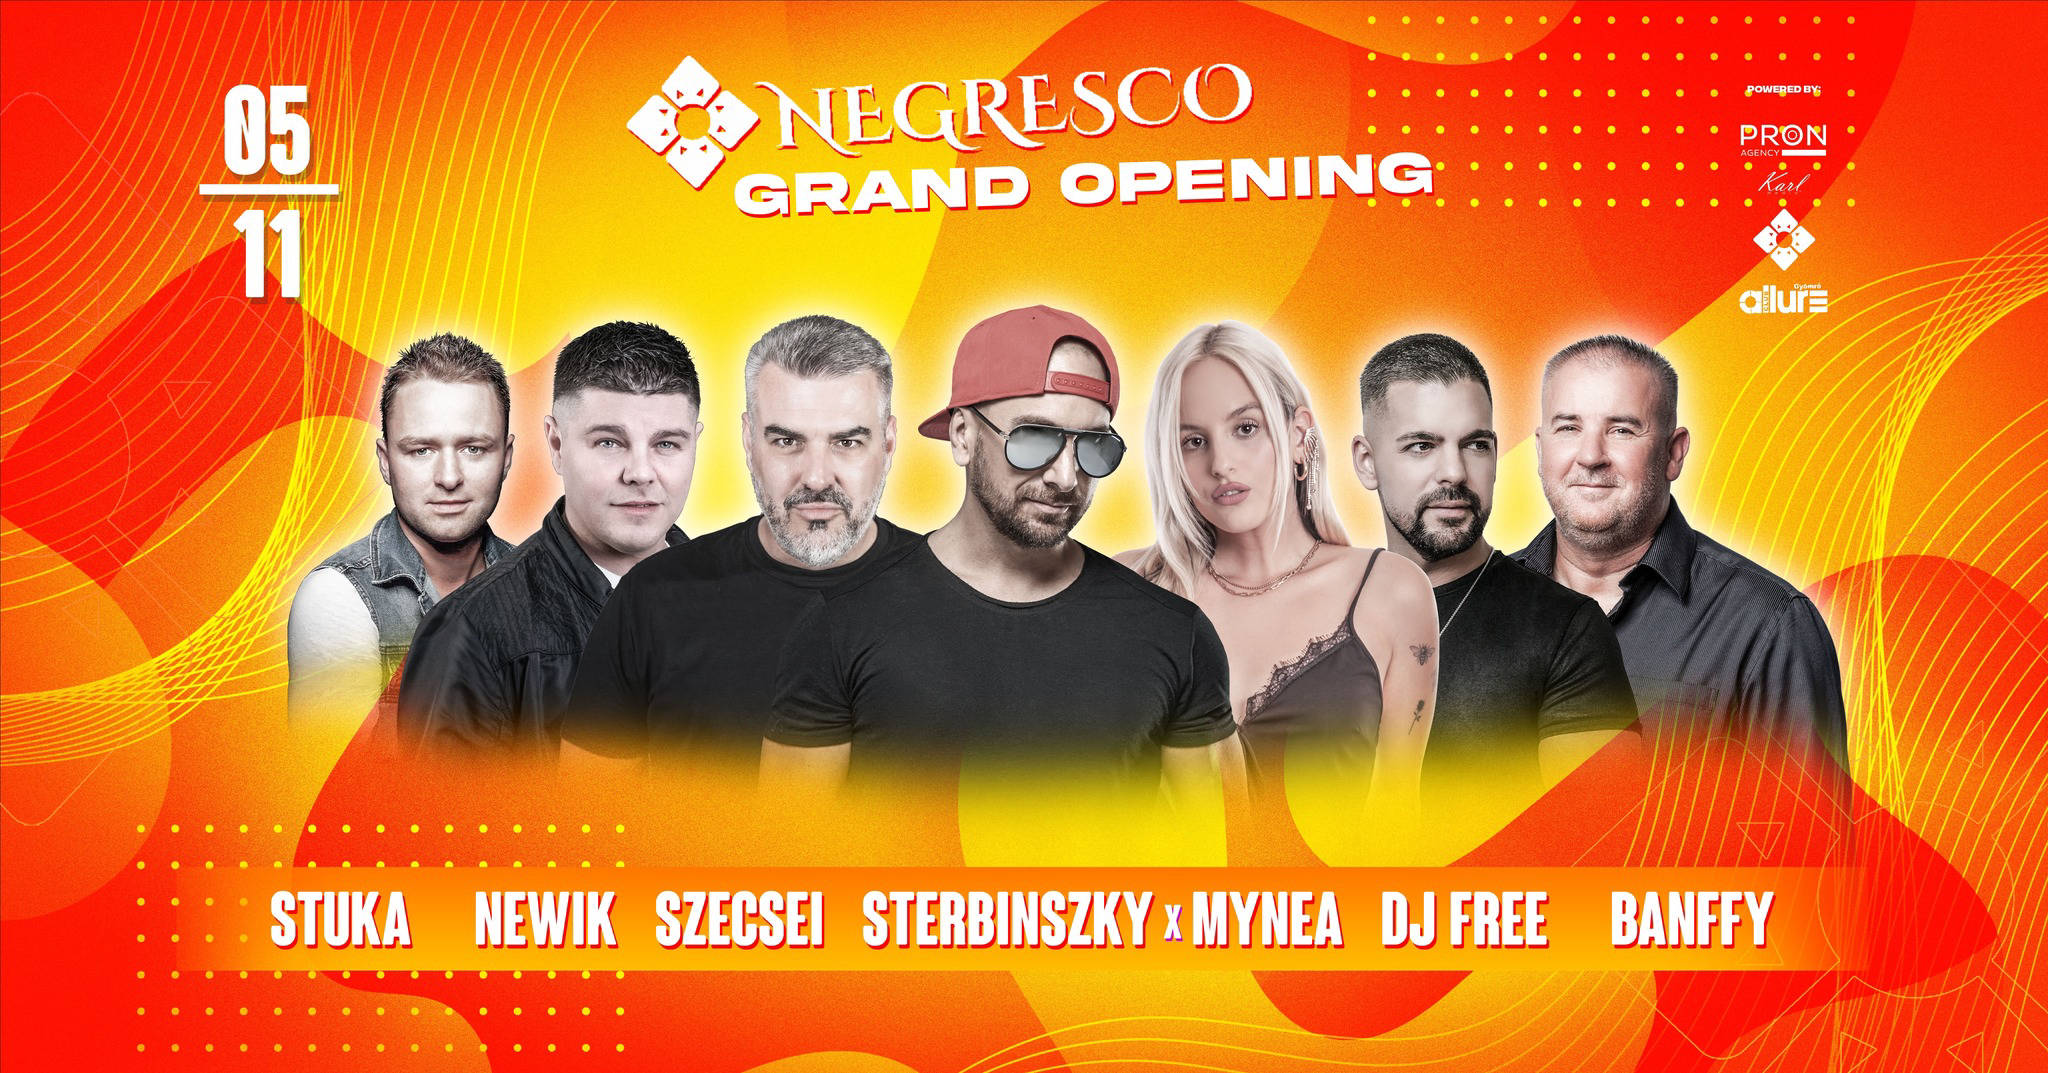 Negresco Grand Opening // 05.11.